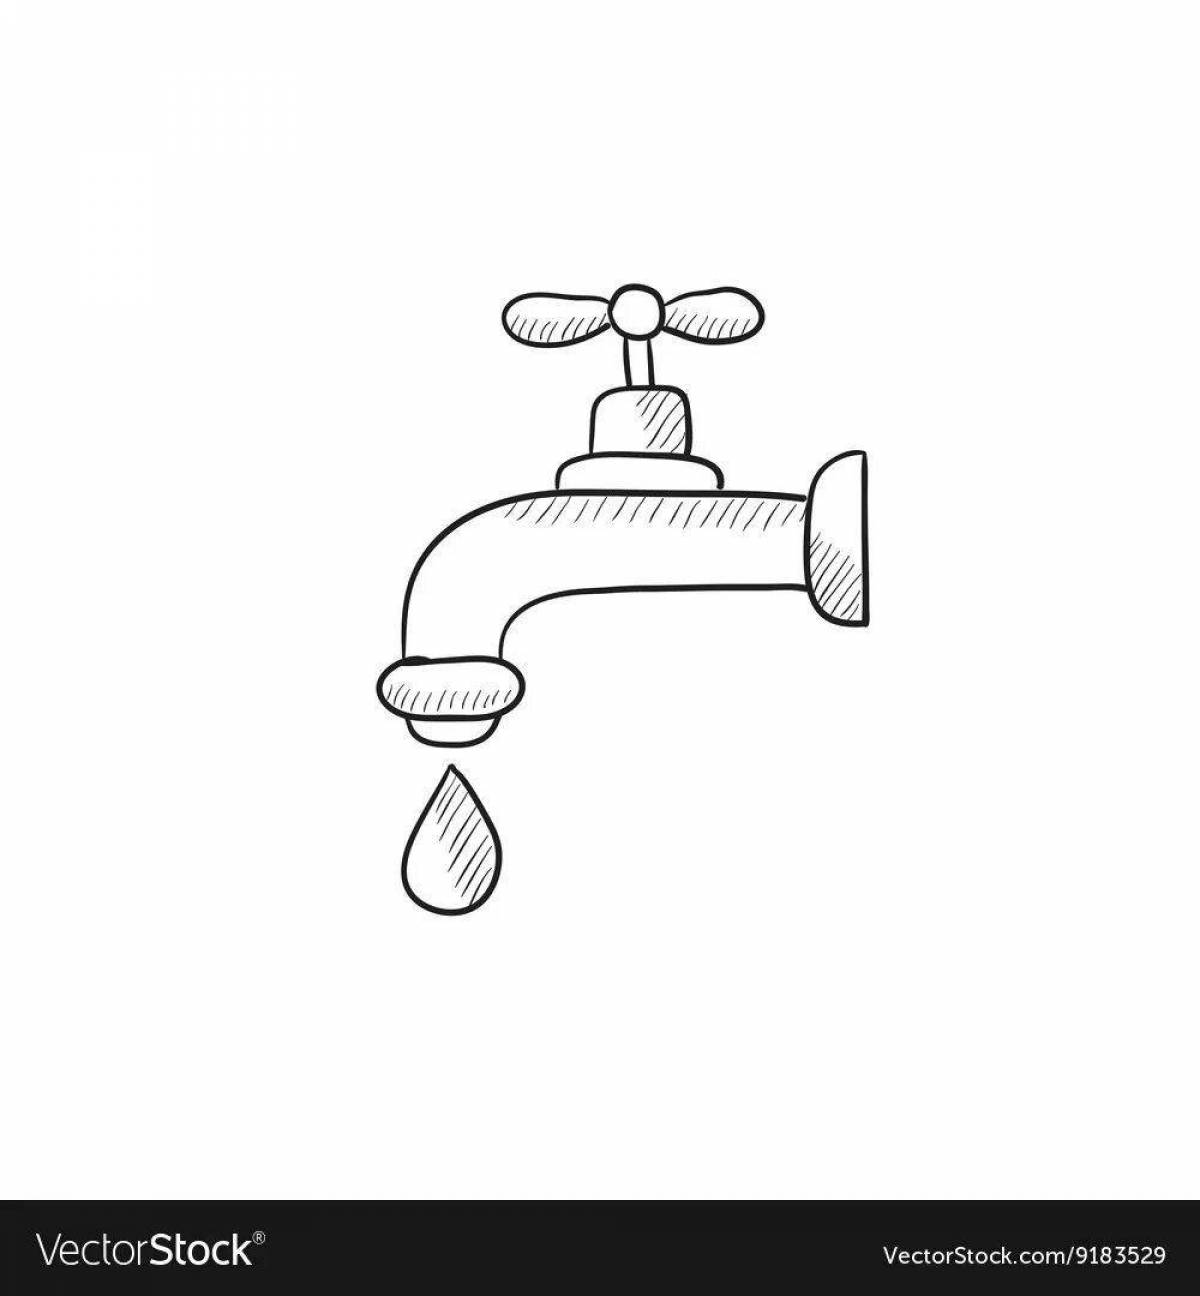 Children's water faucet #13